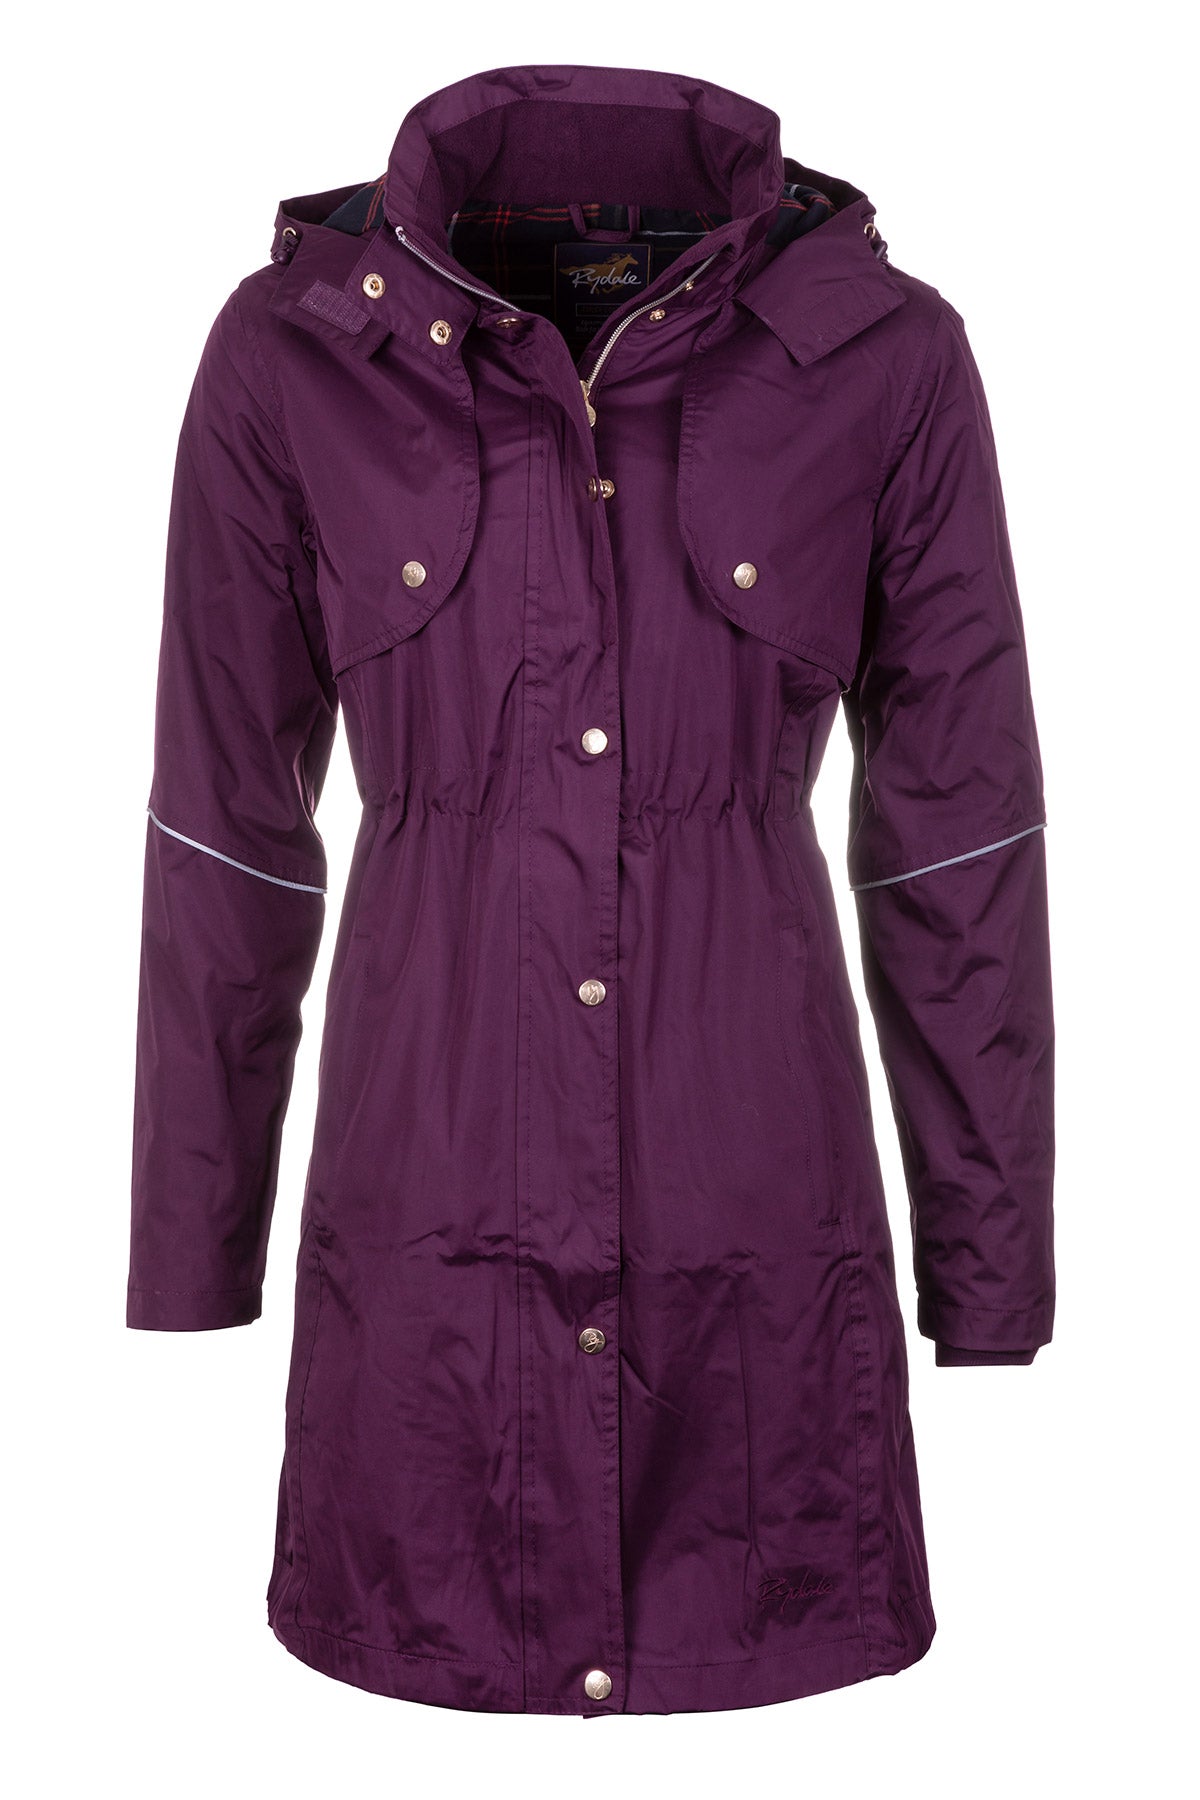 Ladies 3/4 Length Riding Coat UK | Waterproof Jacket | Rydale